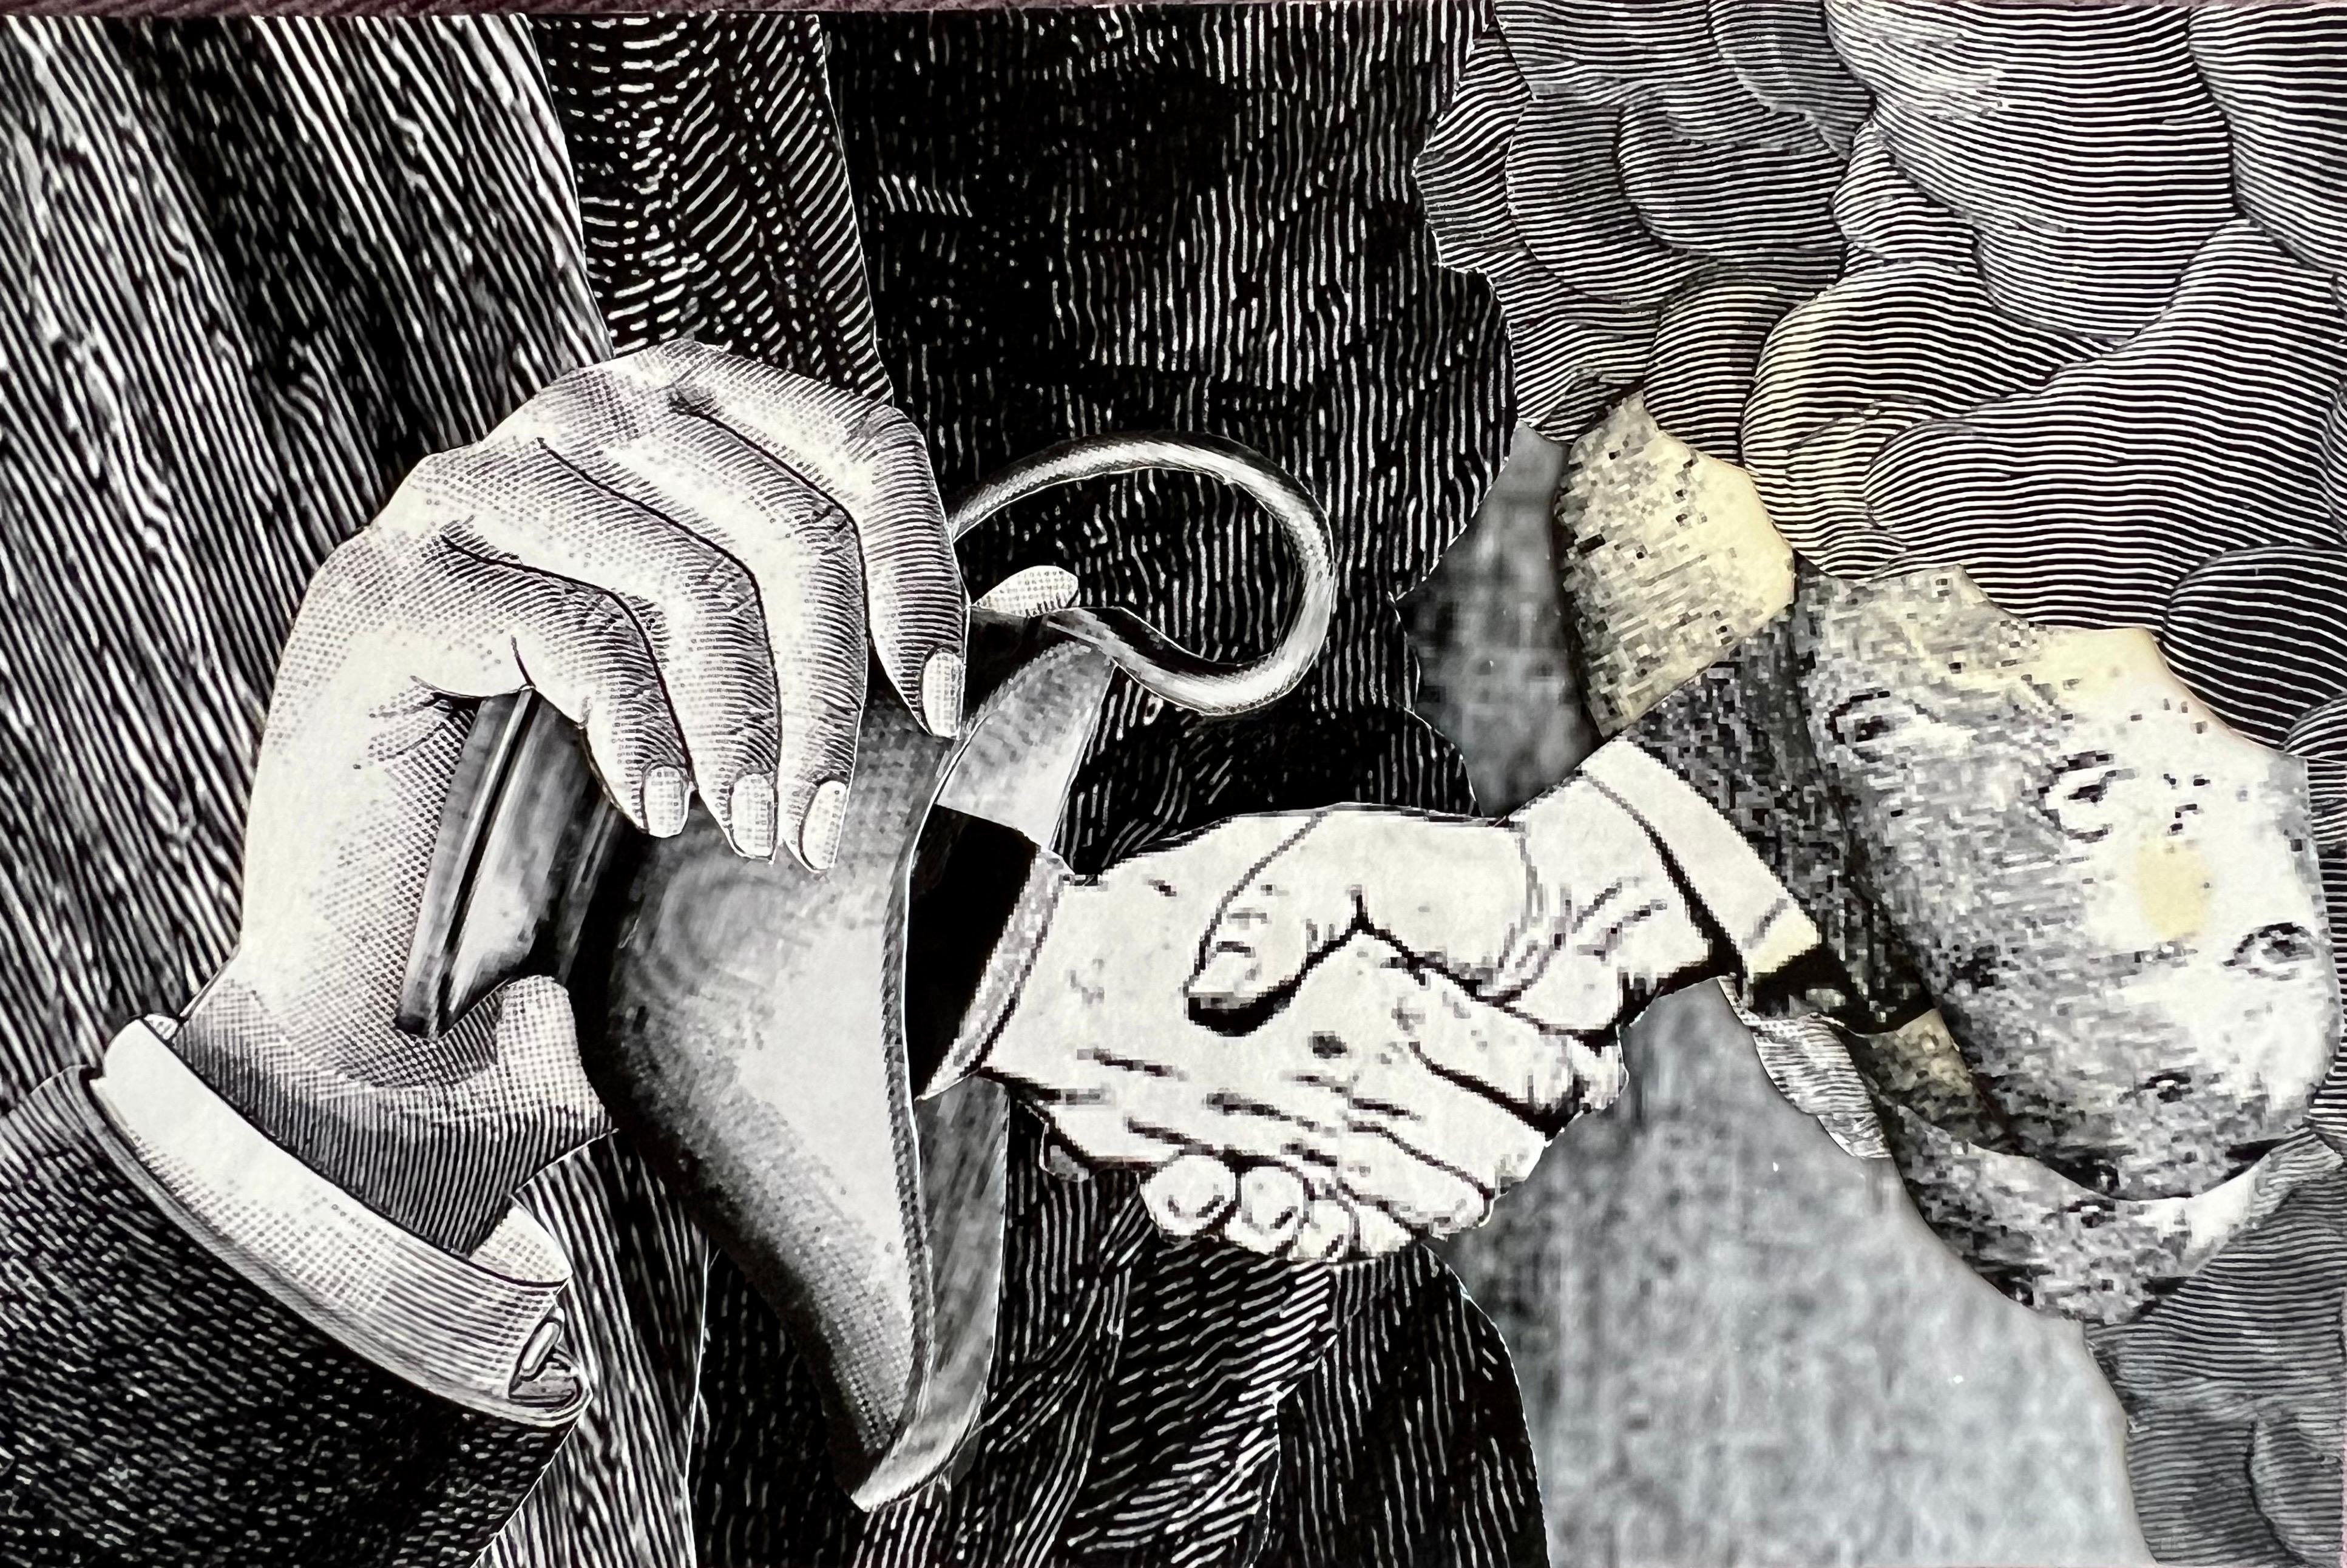 DAVID JAMES GILHOOLY (américain, 1943-2013), 
Collage mixte
6 x 4 pouces,  
Signé à la main et daté au verso
titre : "un mariage fait au paradis, des pommes de terre et de la sauce"
Une poignée de main, une saucière en argent et des pommes de terre